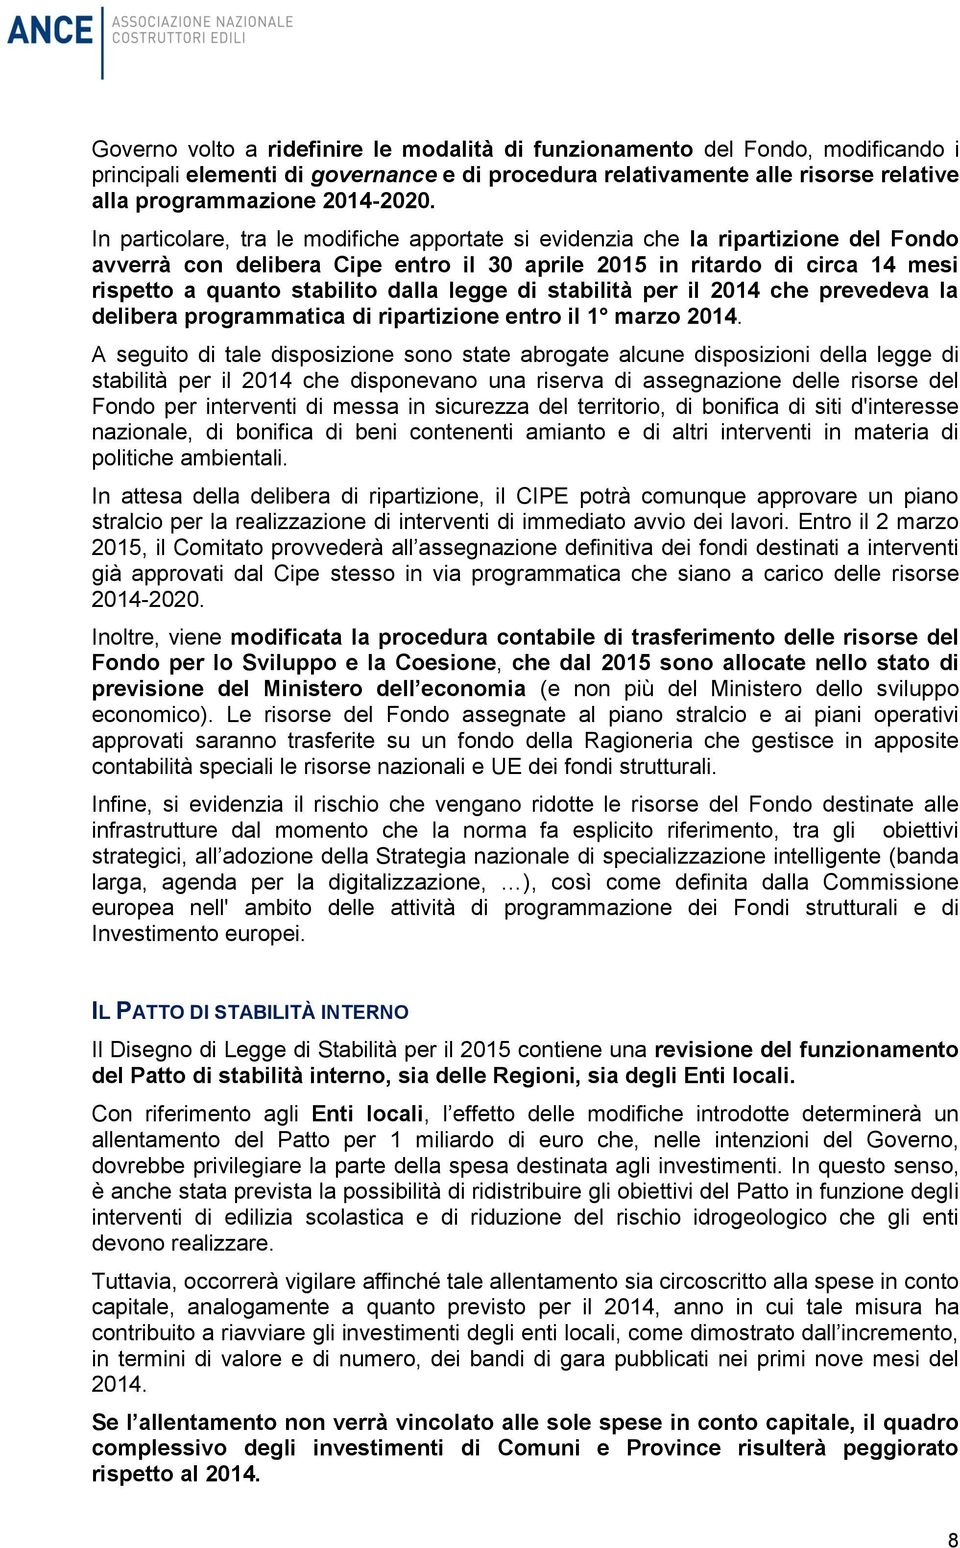 legge di stabilità per il 2014 che prevedeva la delibera programmatica di ripartizione entro il 1 marzo 2014.